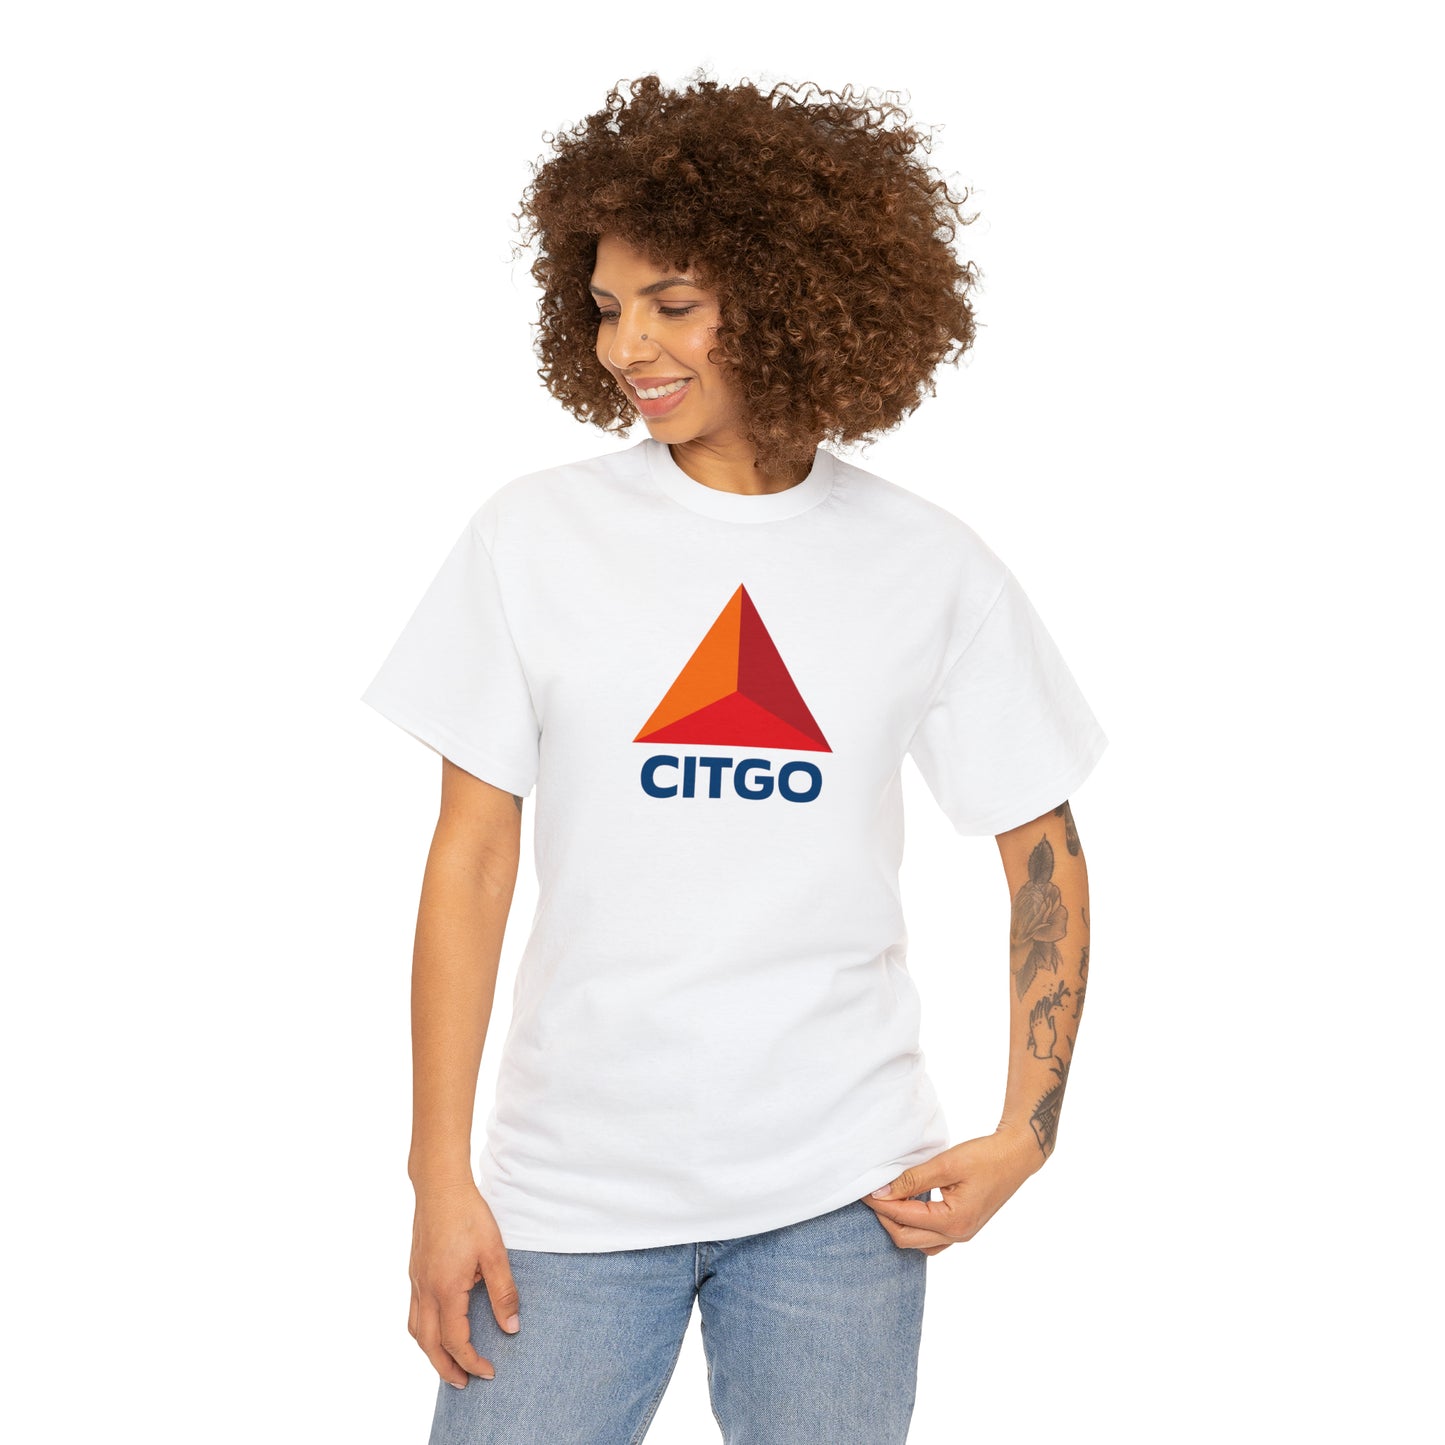 Citgo T-Shirt